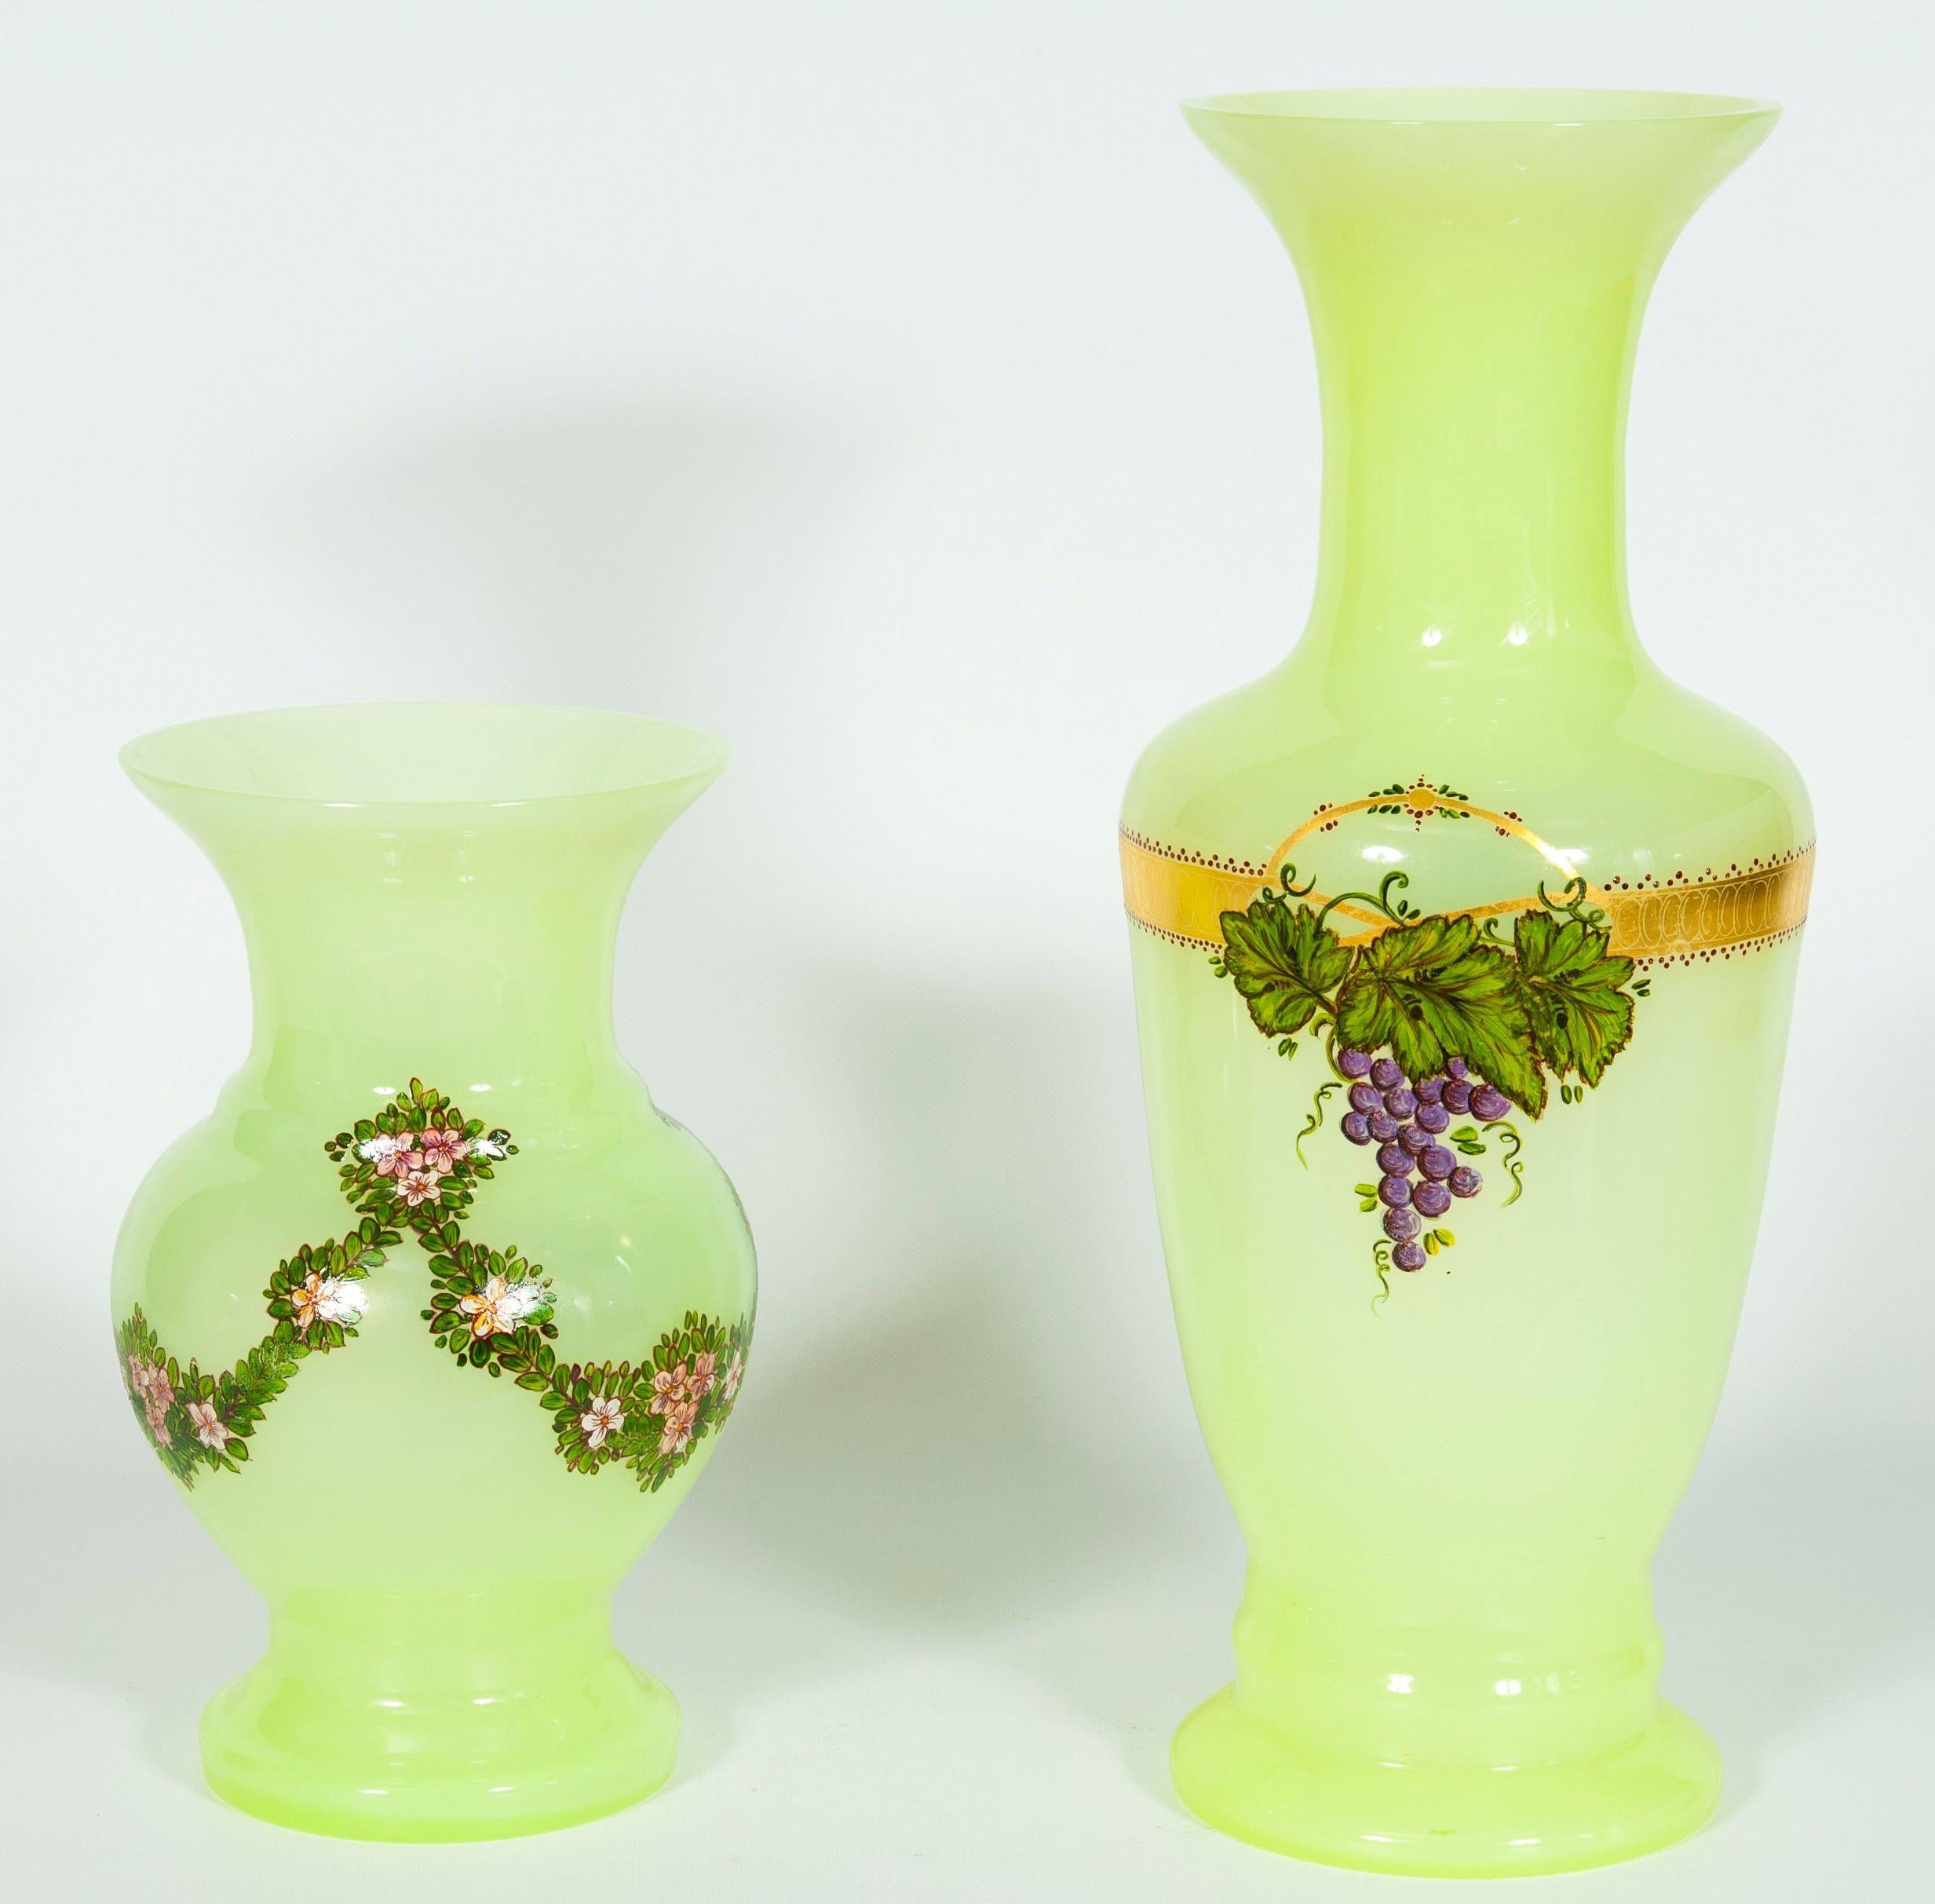 Paire de vases en verre de Murano jaune fluorescent peints et décorés à la main années 1990.
Il s'agit d'une paire unique d'élégants vases vénitiens, soufflés et fabriqués à la main sur l'île vénitienne de Murano. Leur fabrication est datée